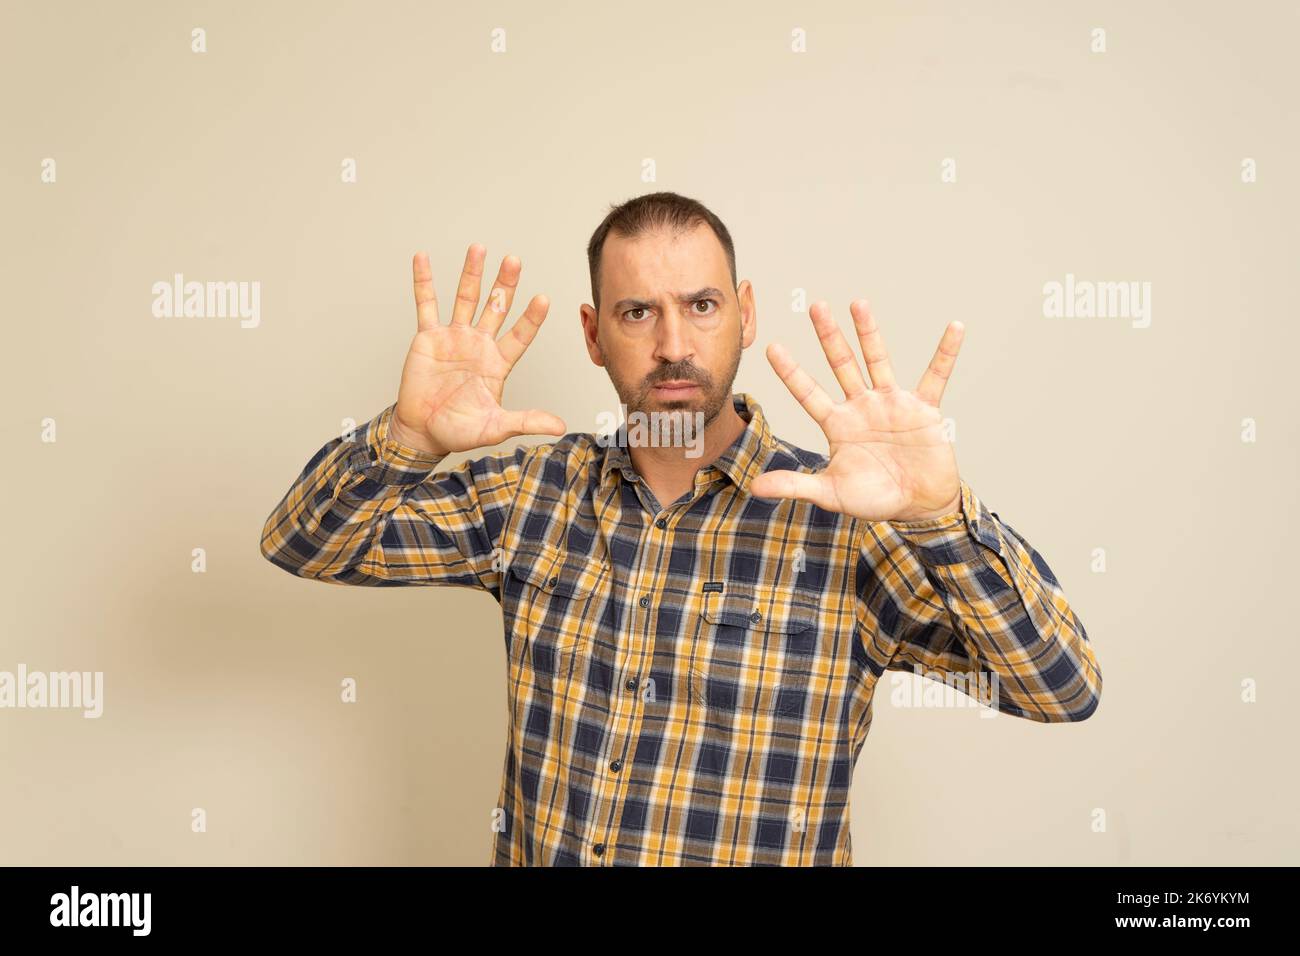 Vue de face d'un homme caucasien aux cheveux courts portant une chemise à carreaux avec ses mains paumes devant lui, avec la caméra face à la paume Banque D'Images